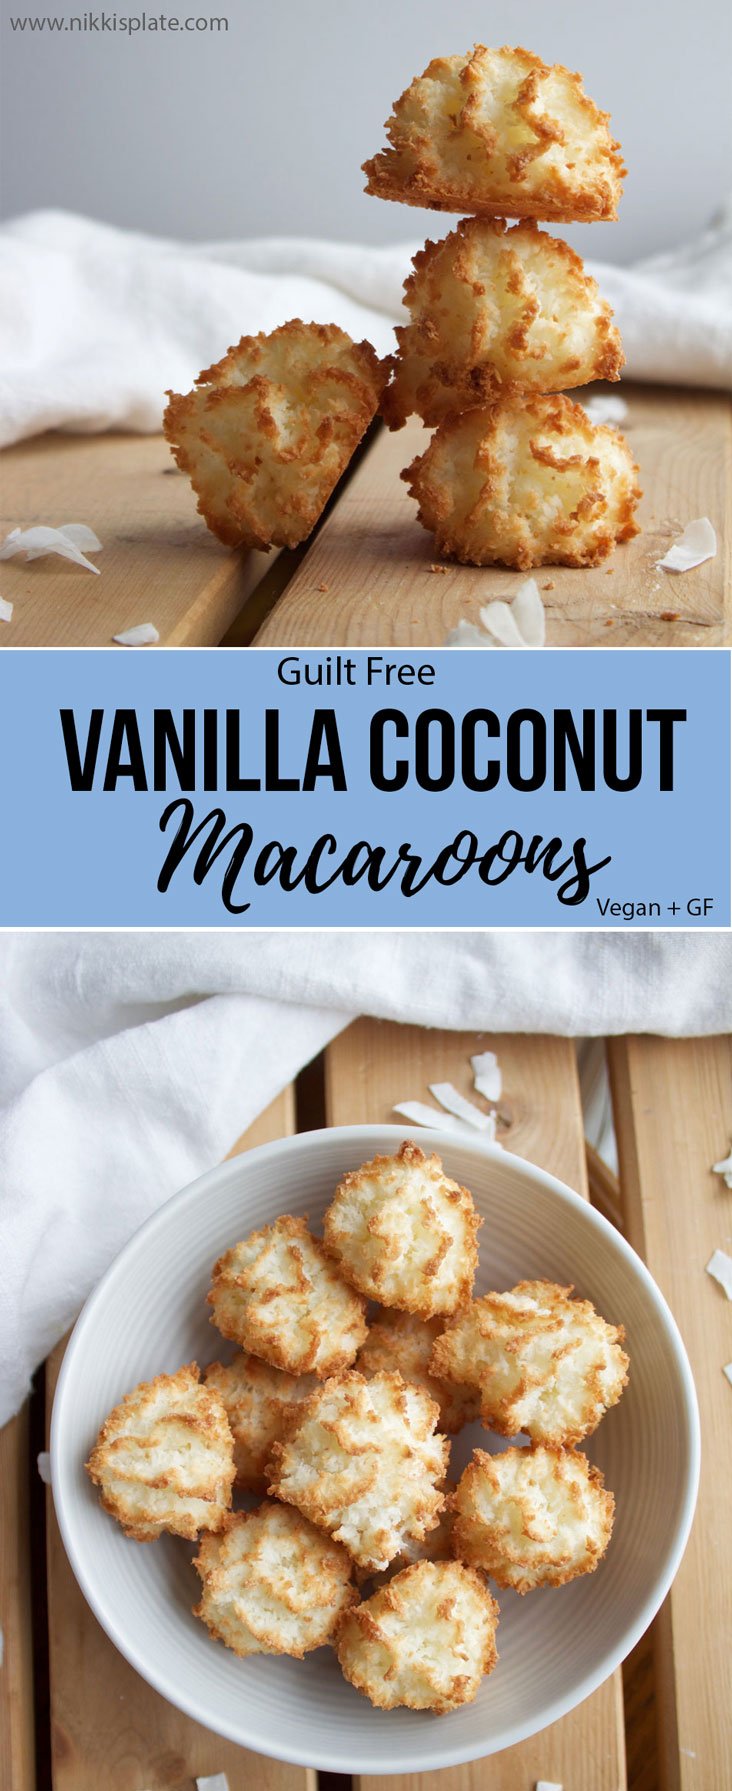 Guilt Free Vanilla Coconut Macaroons {Vegan + Gluten Free} - www.nikkisplate.com